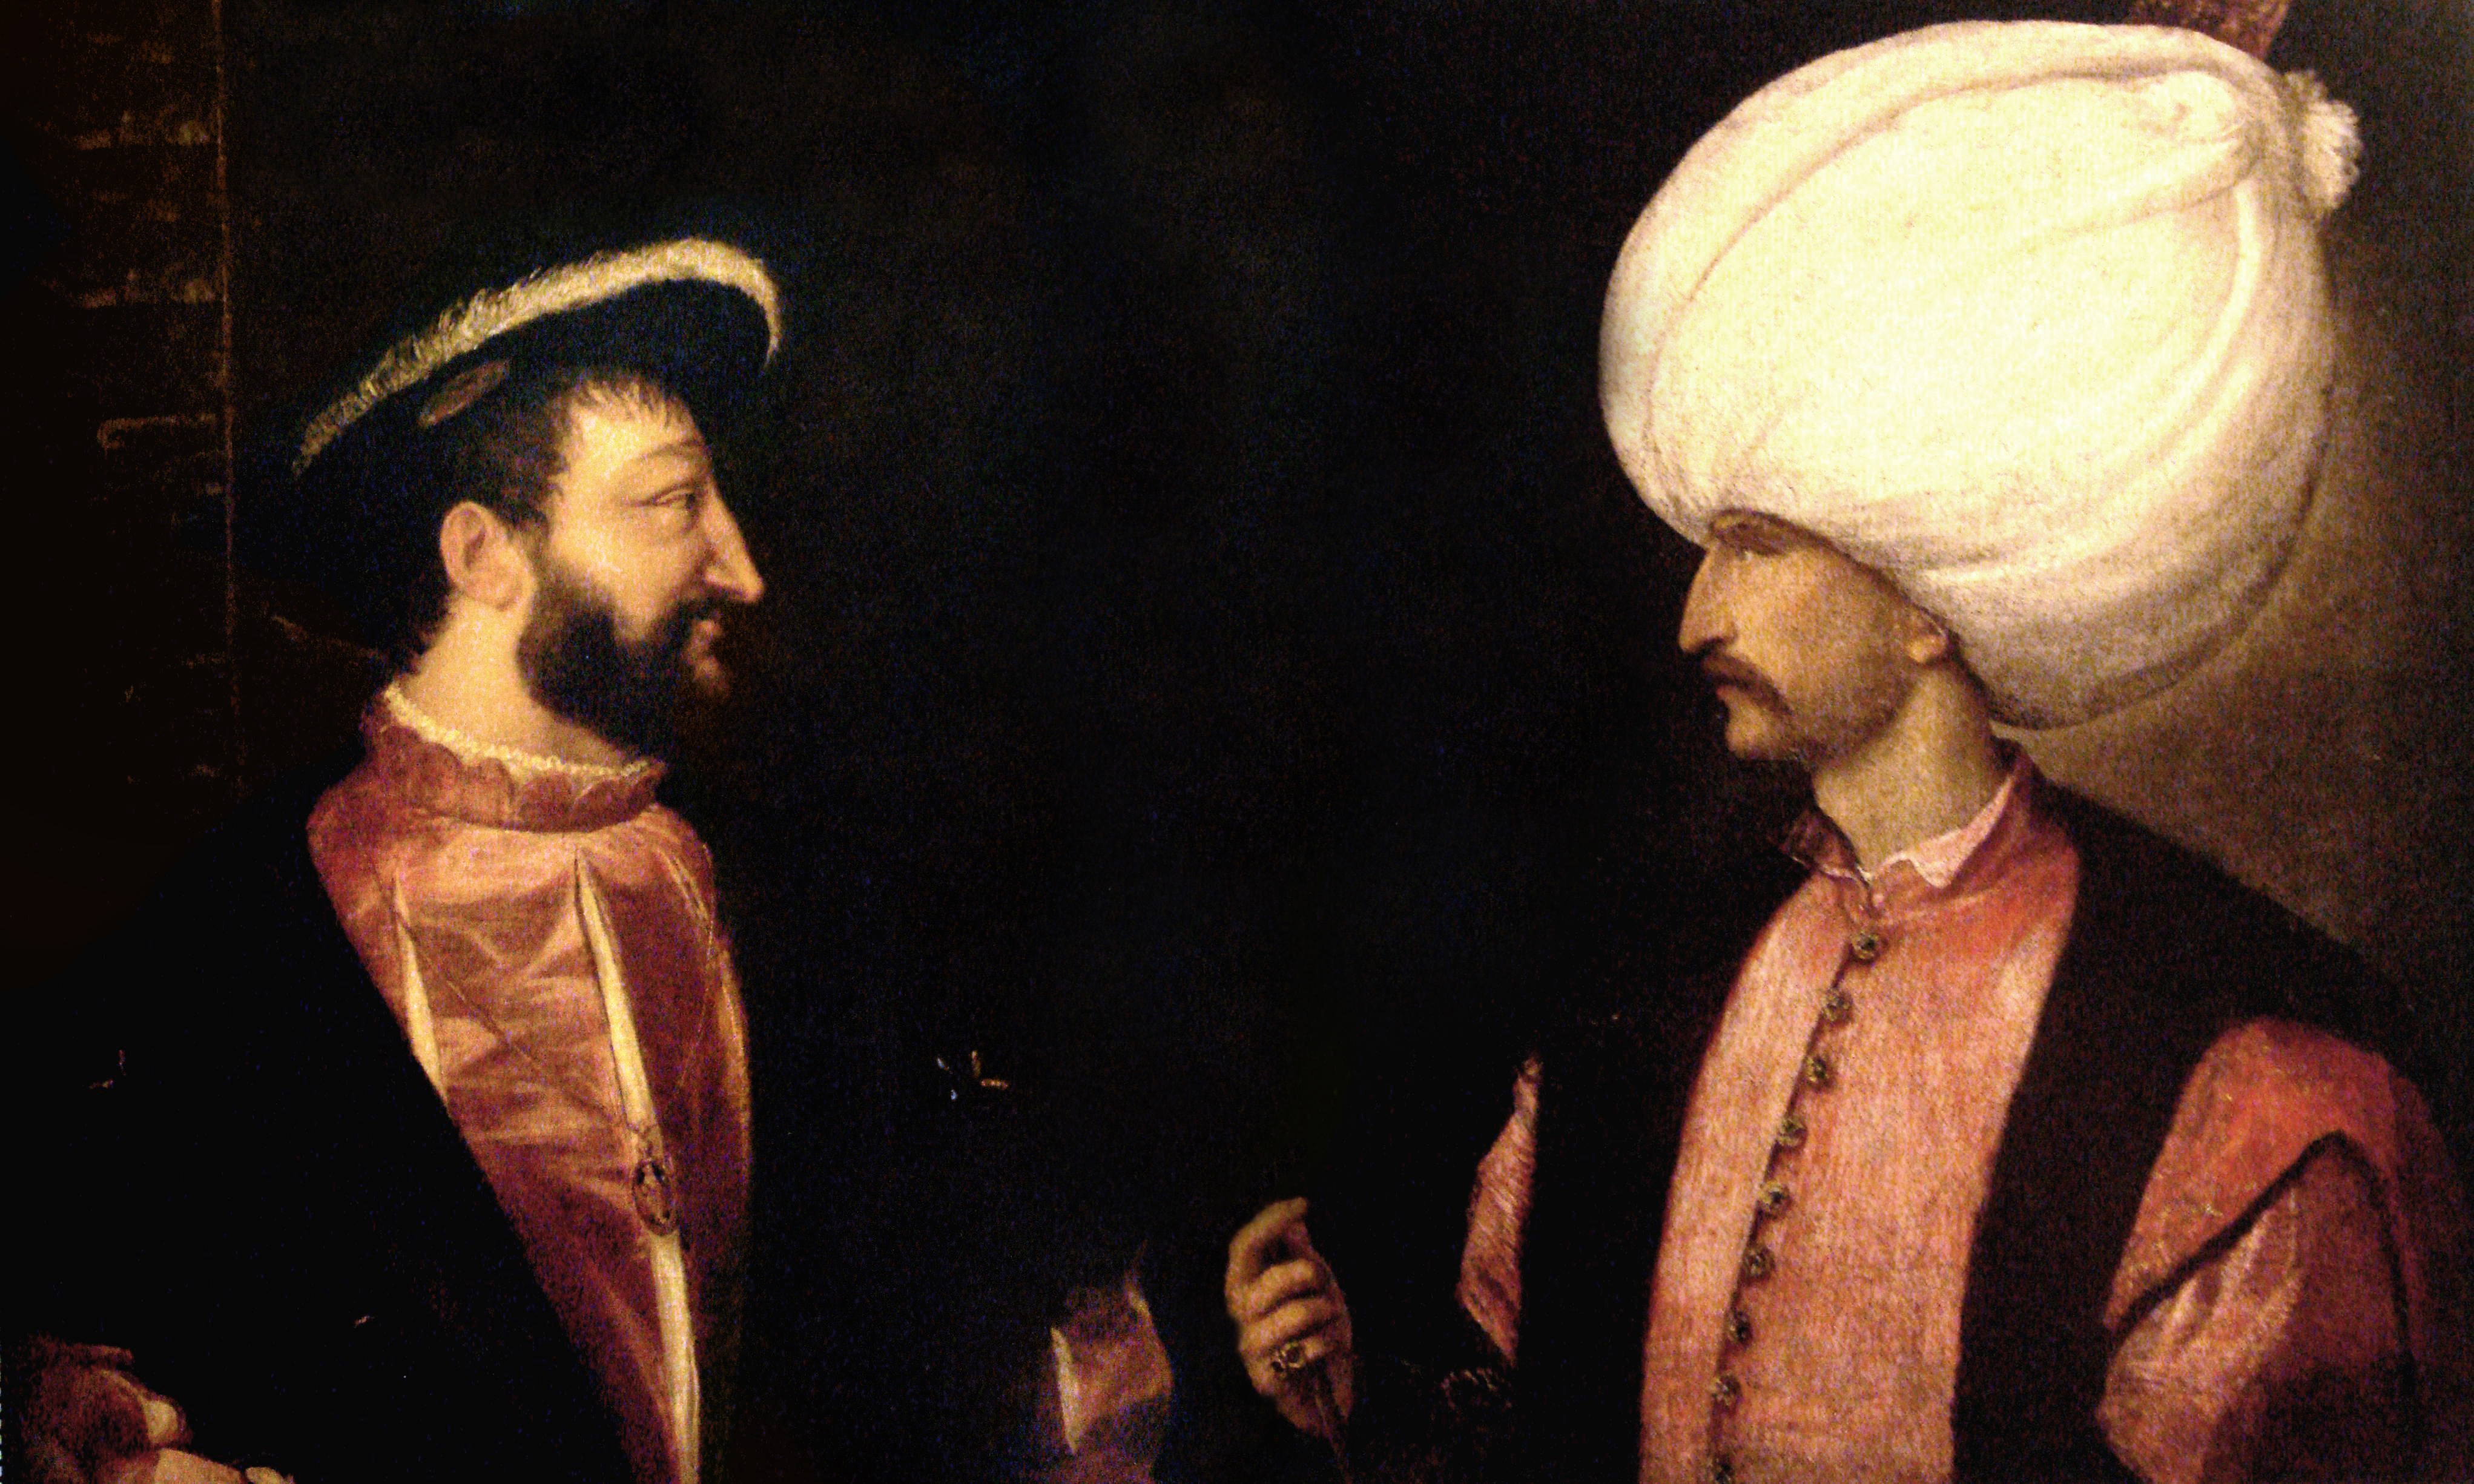 François Ier et Soliman le Magnifique, Le Titien vers 1530